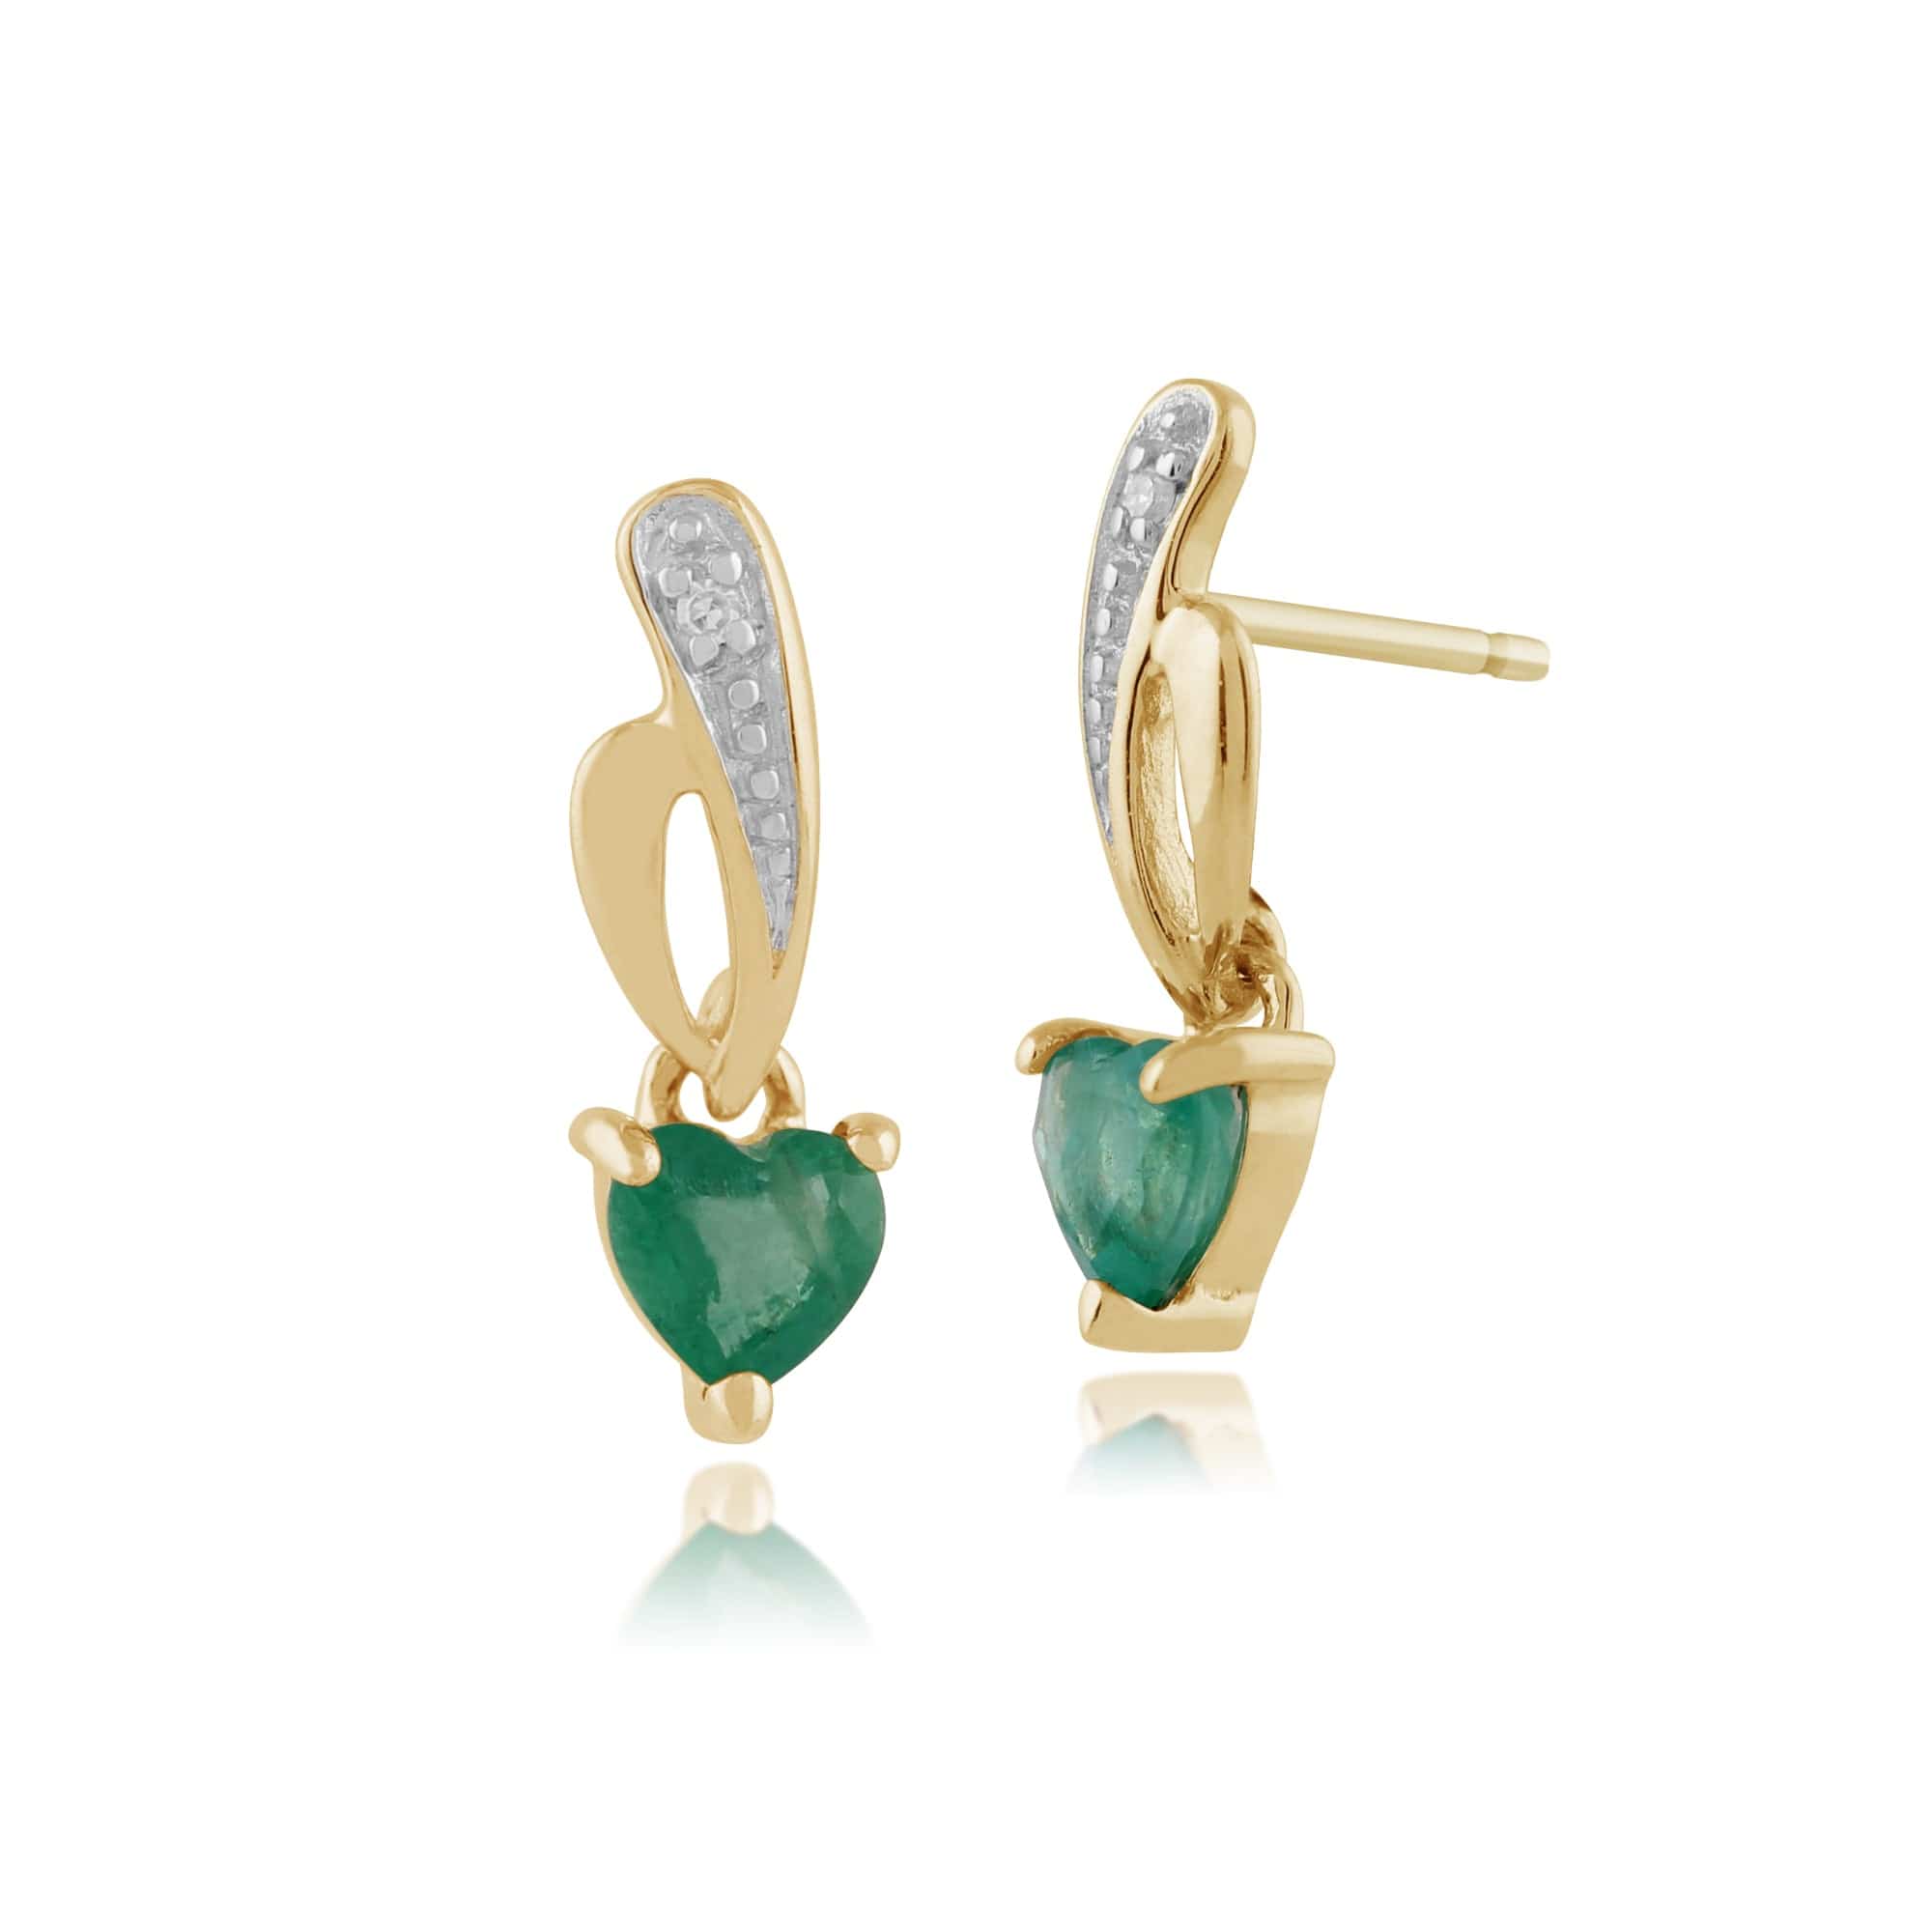 Art Nouveau Style Heart Emerald & Diamond Drop Earrings in 9ct Yellow Gold - Gemondo